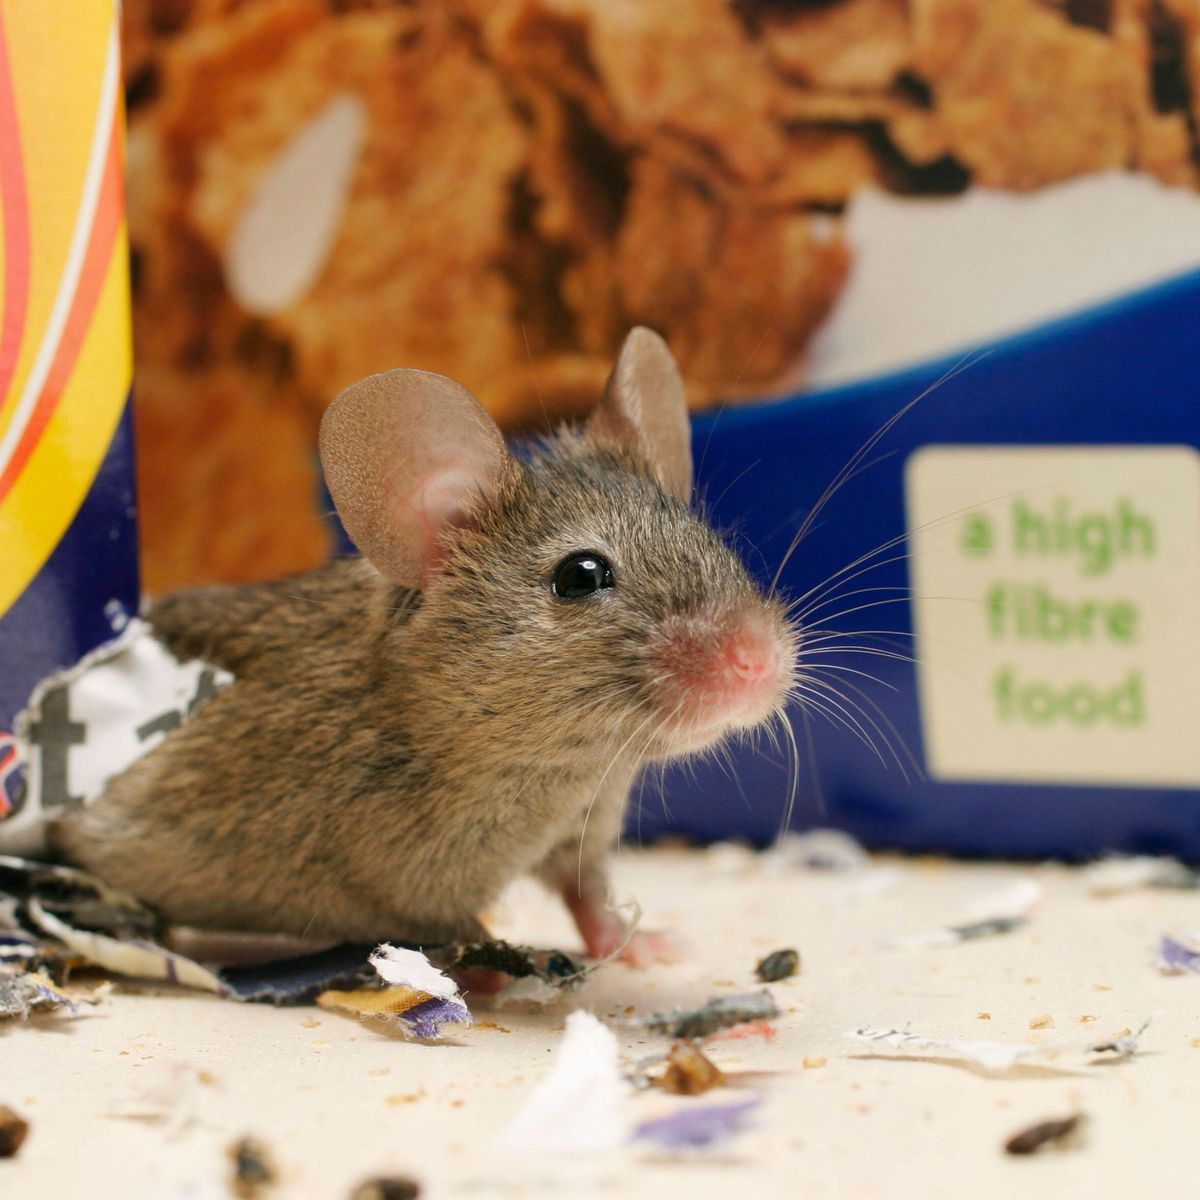 Mäuse aus dem Haus vertreiben: Diese Mittel wirken am besten